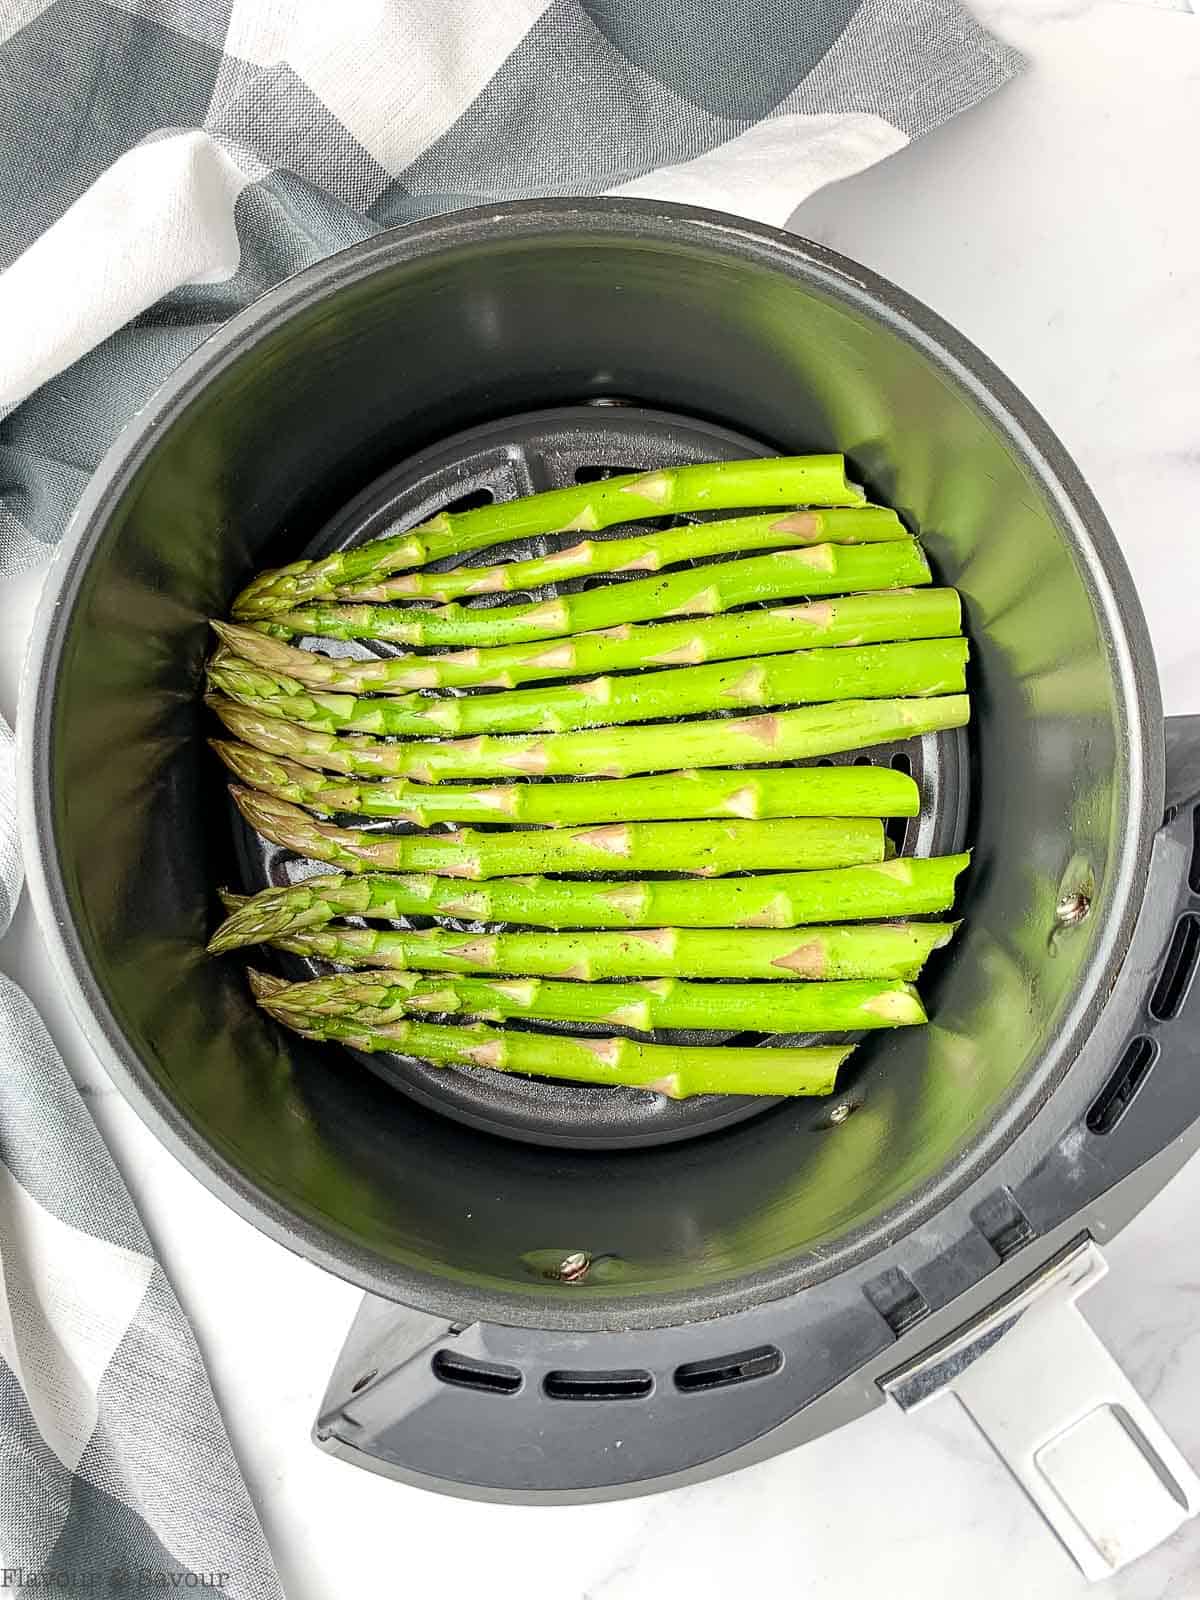 asparagus spears in an air fryer